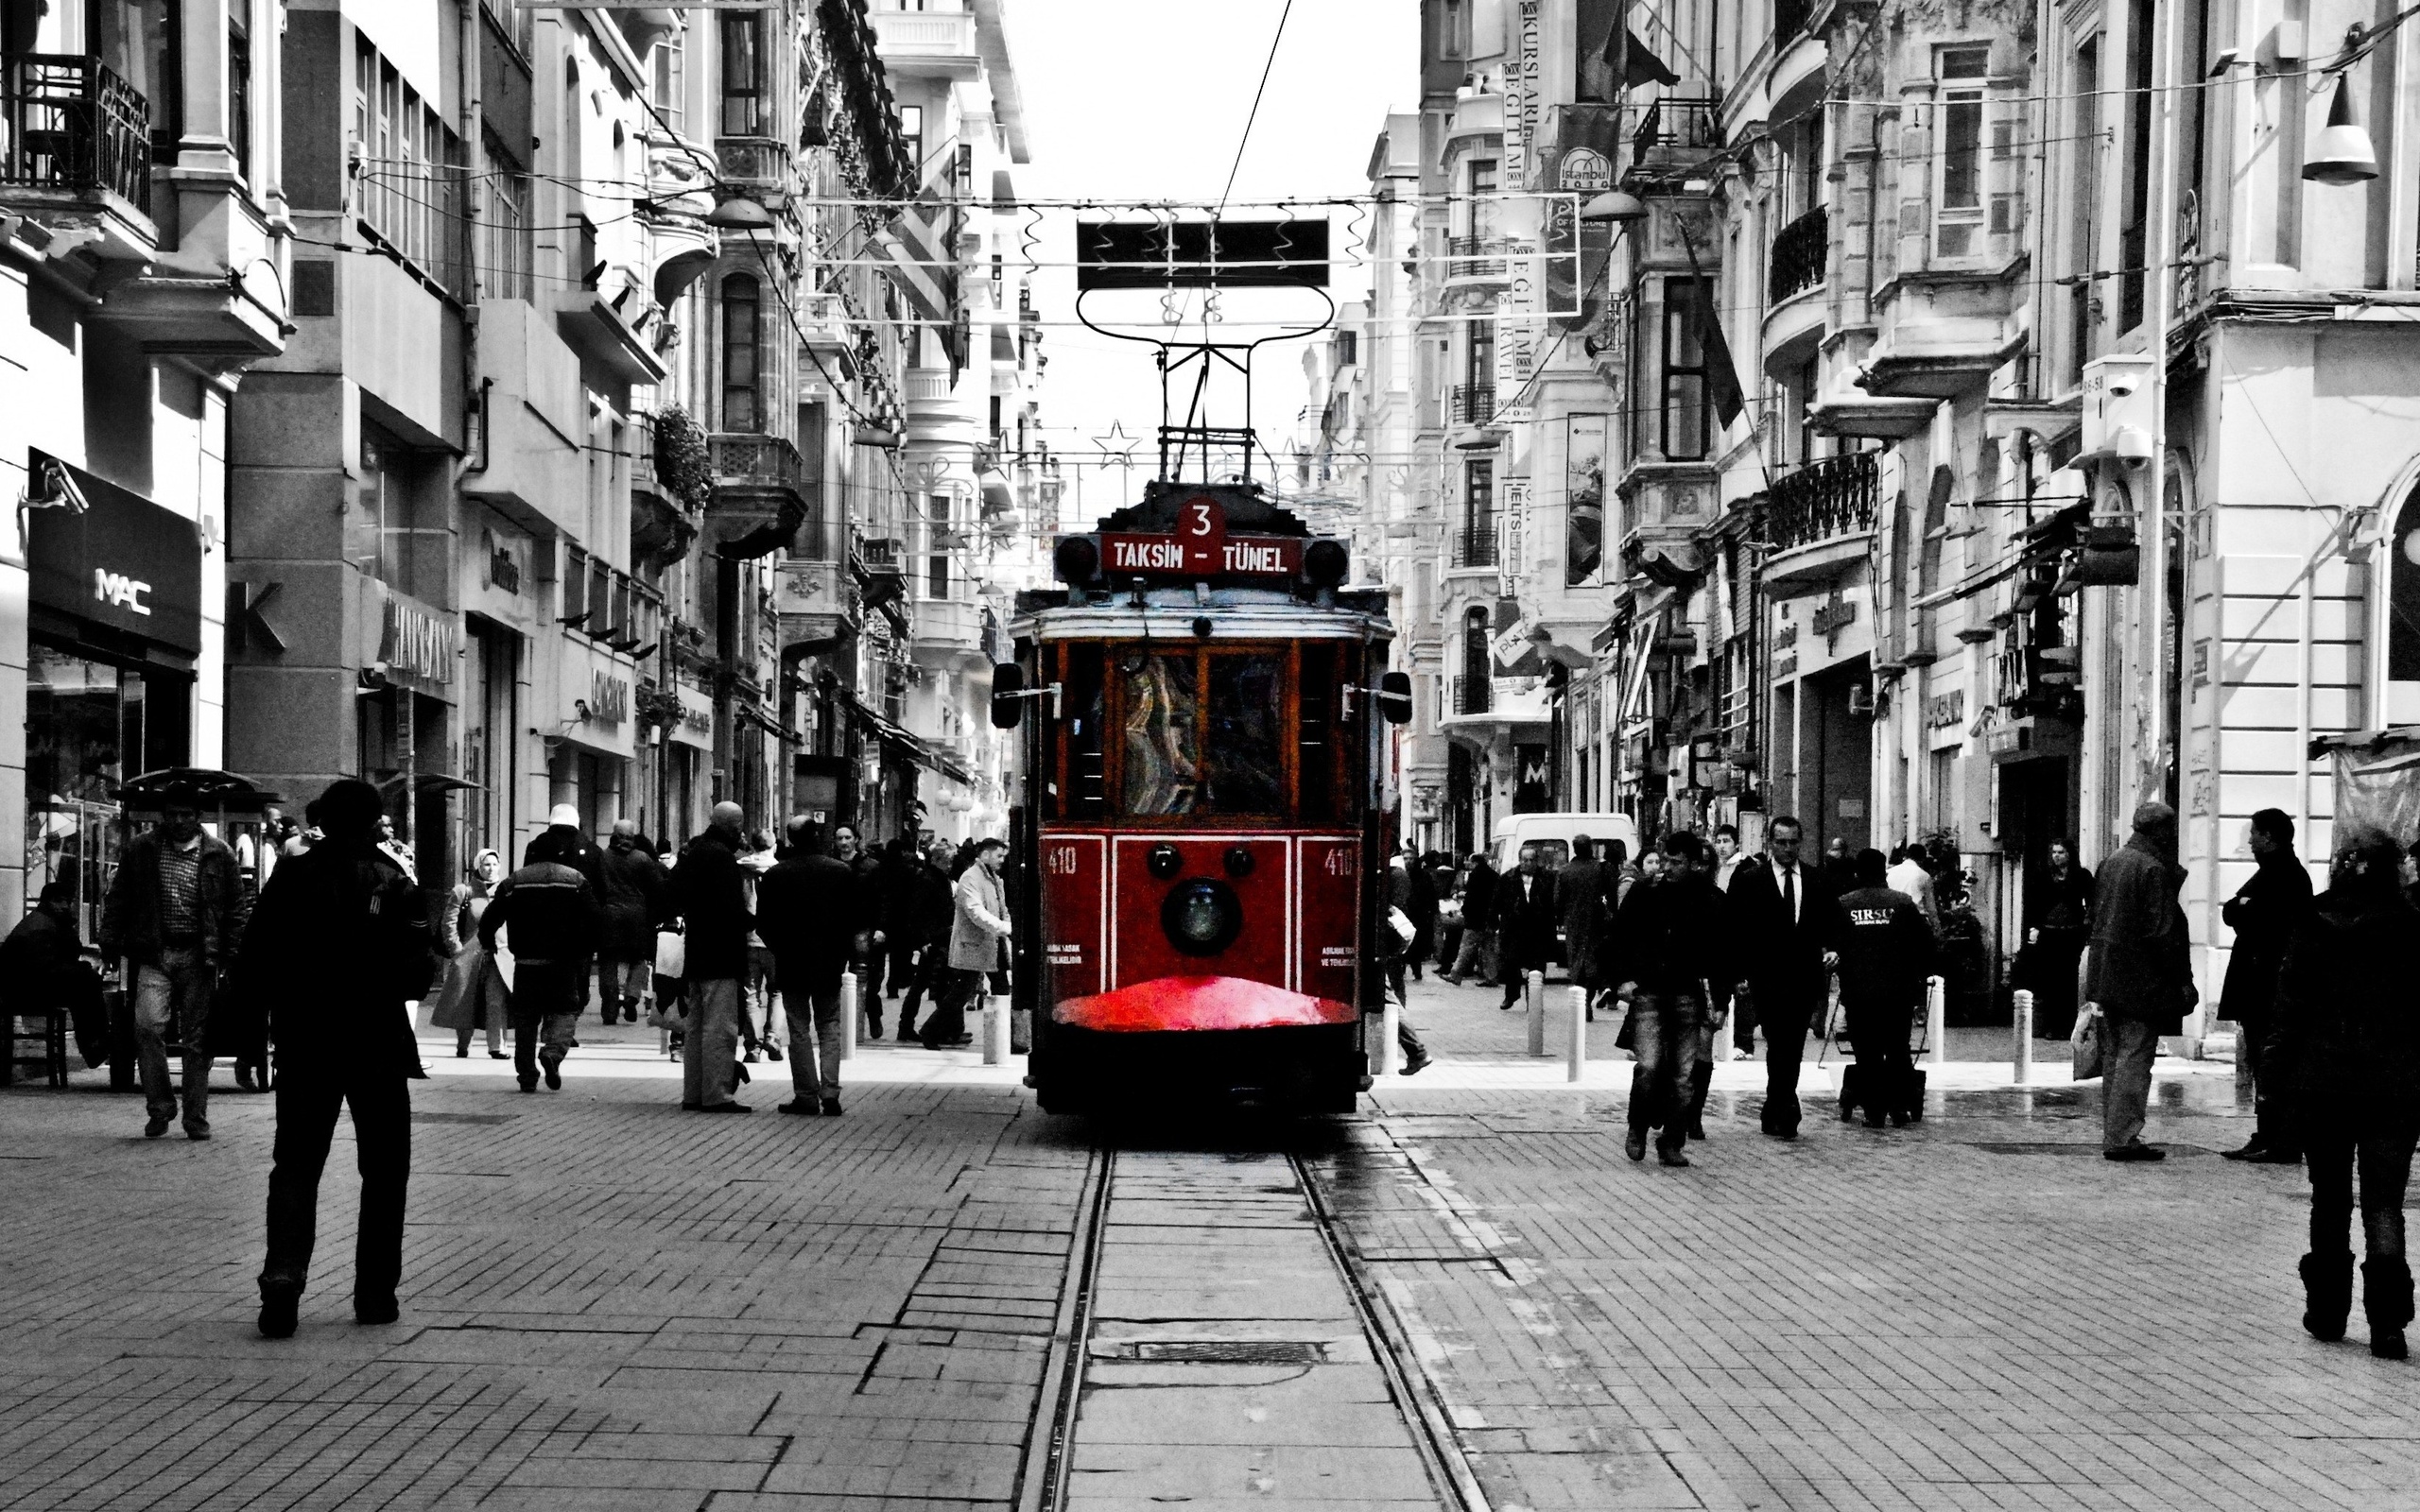 Истикляль. Стамбул Таксим Истикляль. Улица Истикляль и Таксим в Стамбуле. Трамвай на Истикляль в Стамбуле. Площадь Таксим и улица Истикляль.